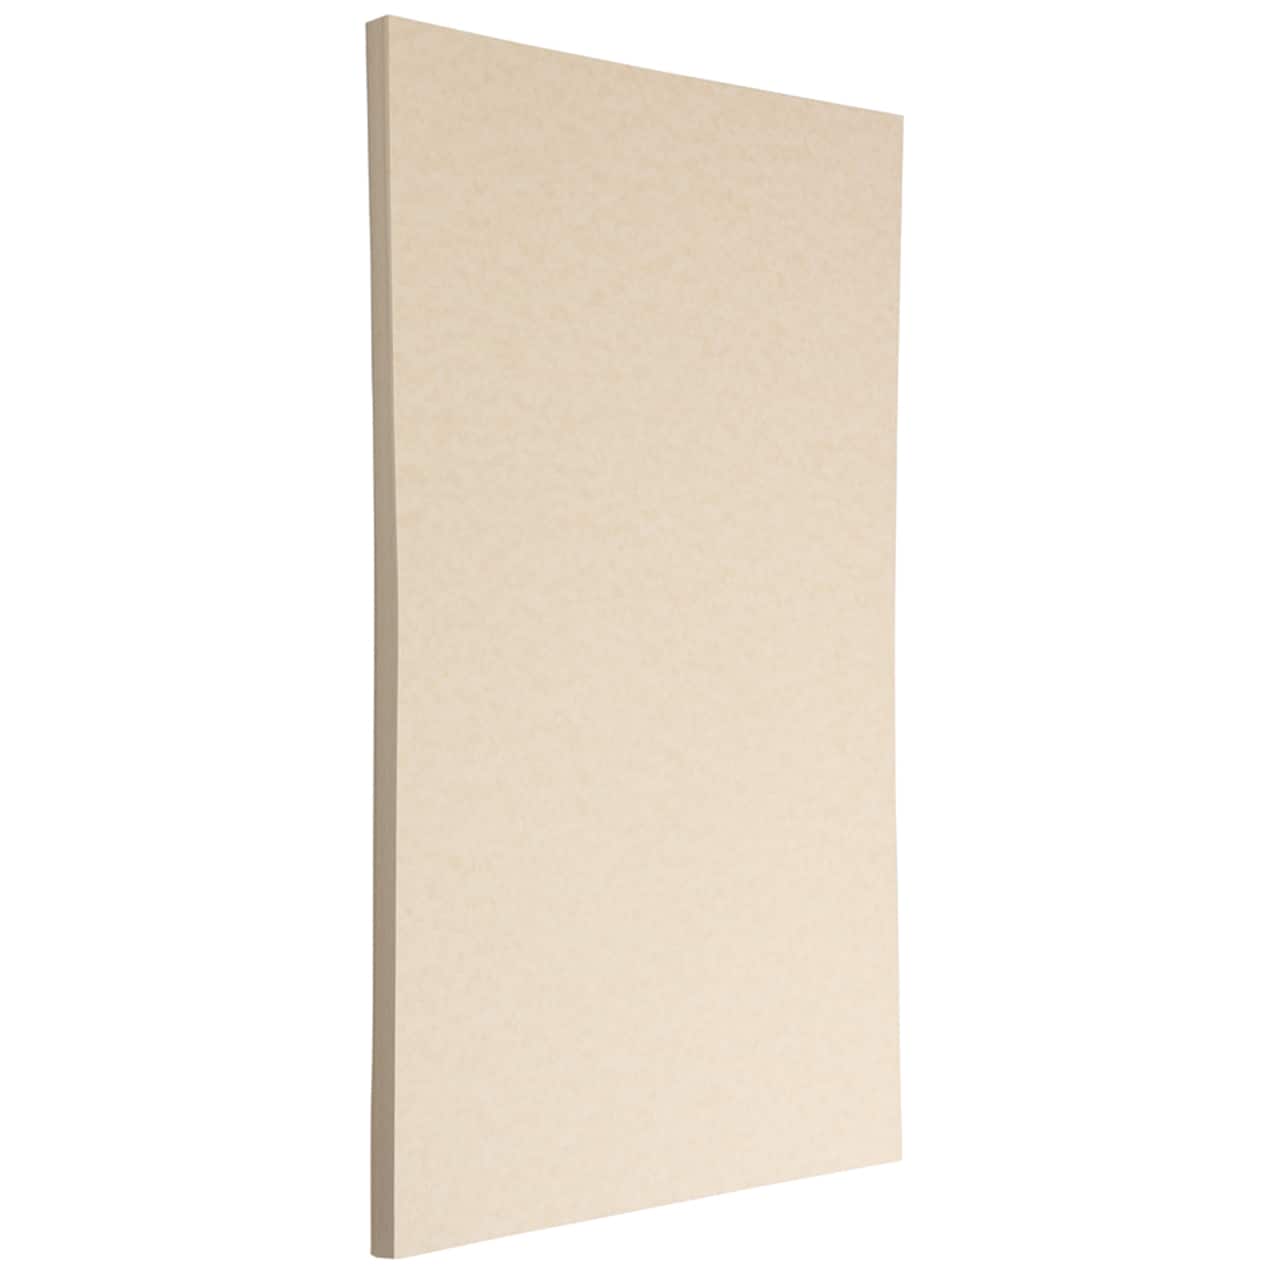 JAM Paper Natural Parchment 11 x 17 24lb. Paper, 100 Sheets